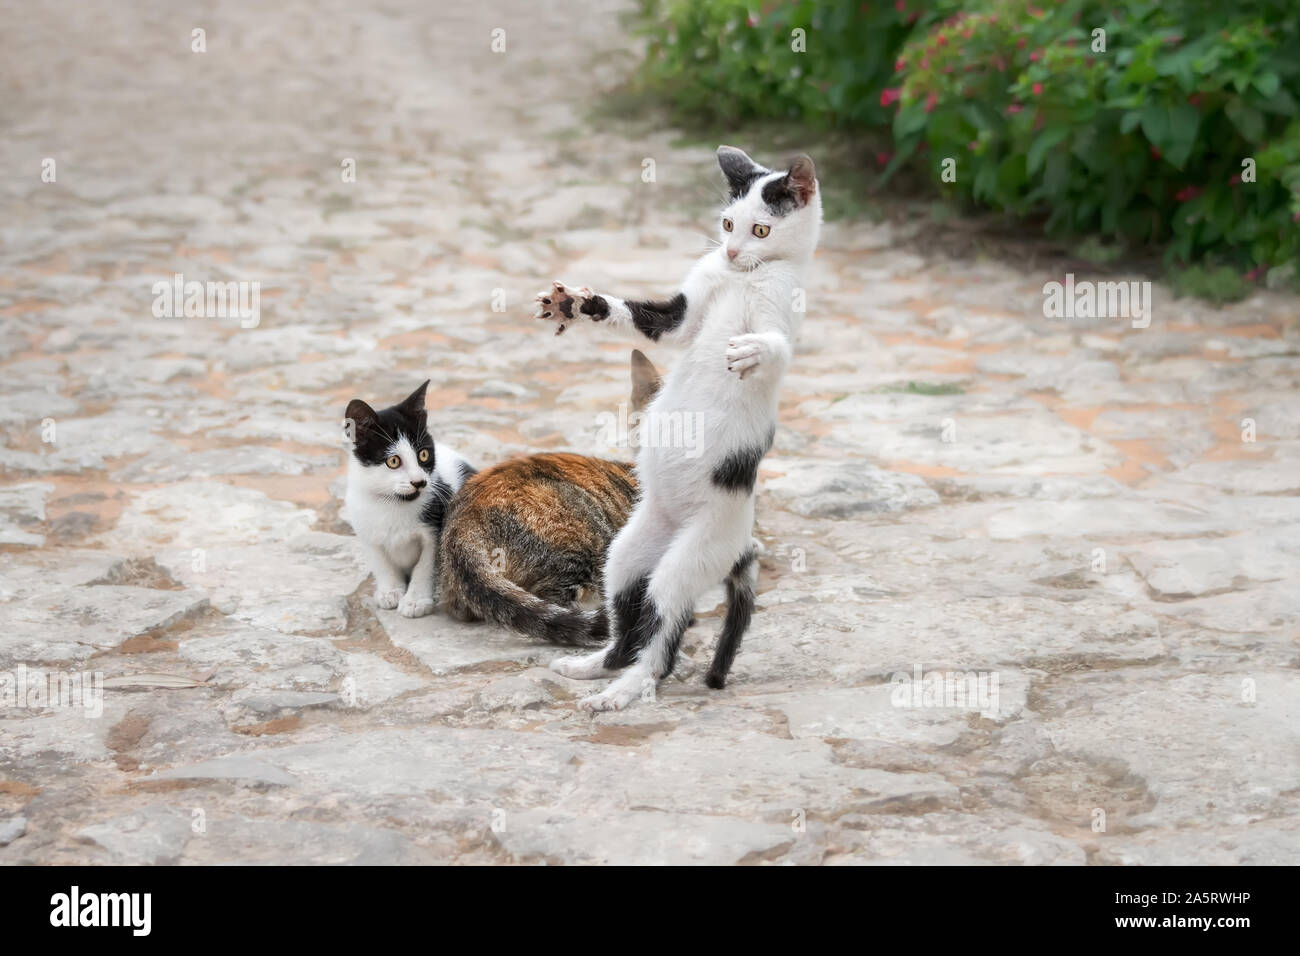 Funny gattino, bicolore bianco con il nero patch, giocando, in piedi sulle zampe posteriori con ampia diffusione di armi e di zampe in modo giocoso, Creta, Grecia Foto Stock